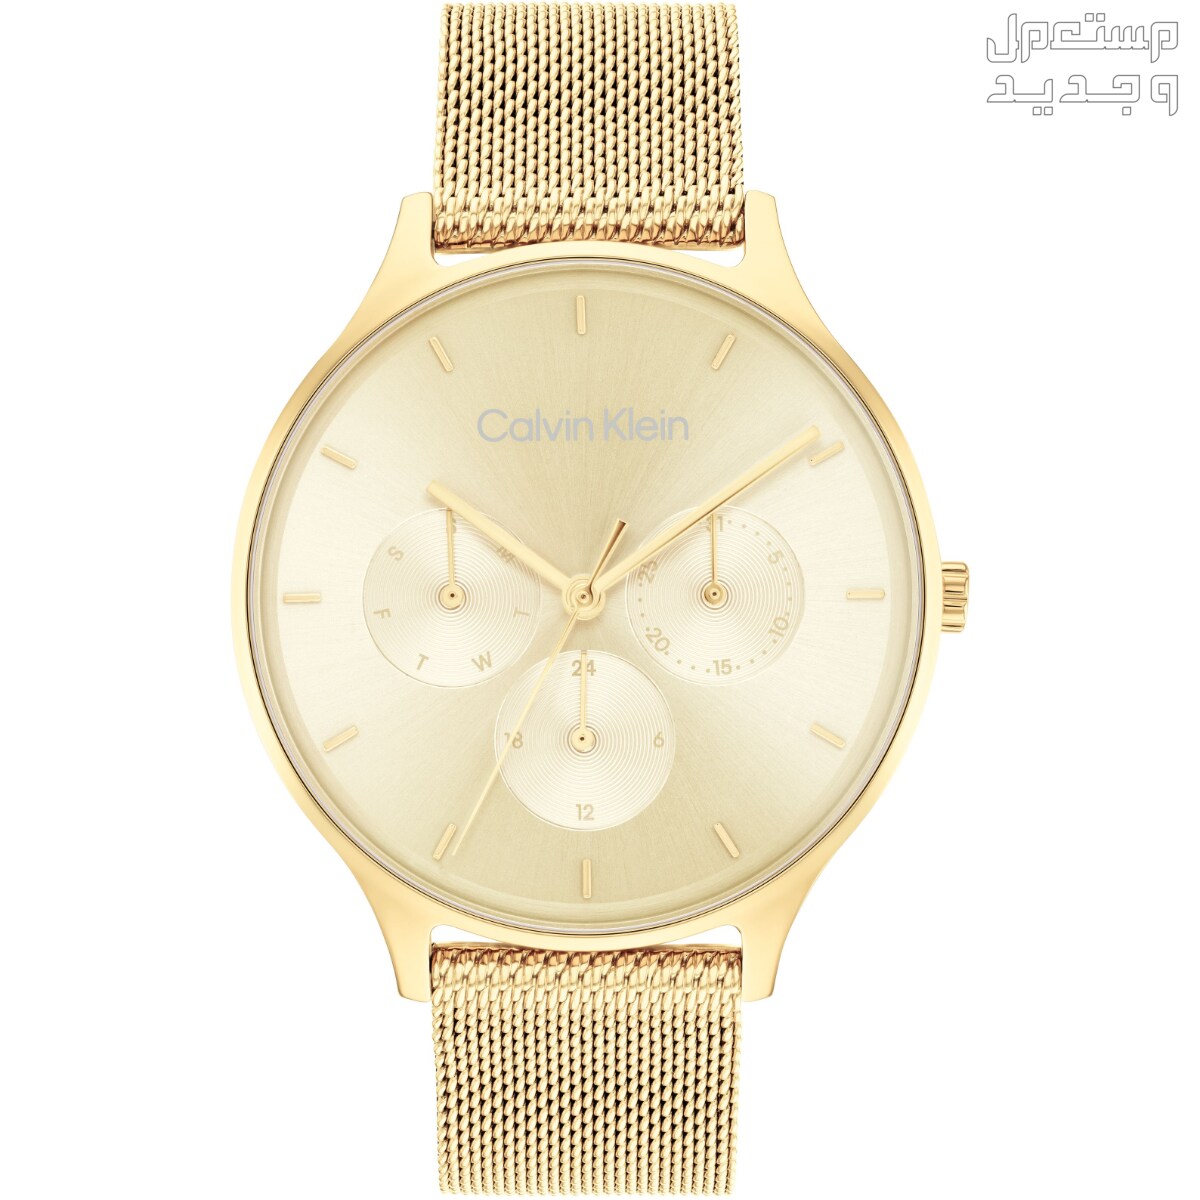 أنواع ساعات يد ذهب نسائية واسعارها في الأردن ساعة Calvin Klein Timeless Multifunction Day and Date Gold Steel Watch 25200103